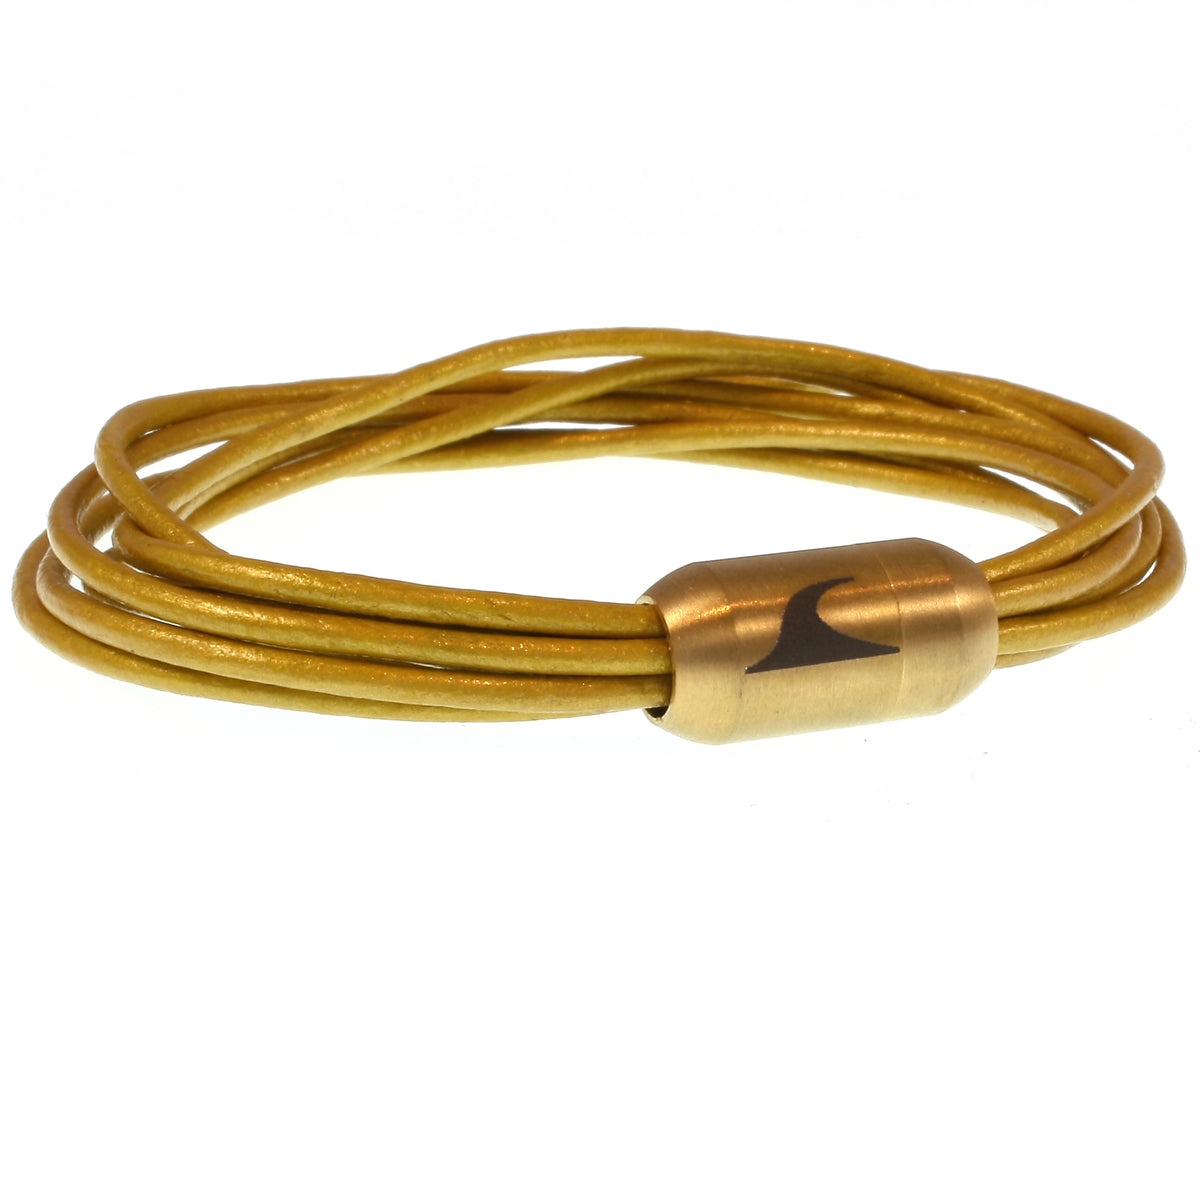 Damen-Leder-armband-fem-gold-Edelstahlverschluss-vorn-wavepirate-shop-r